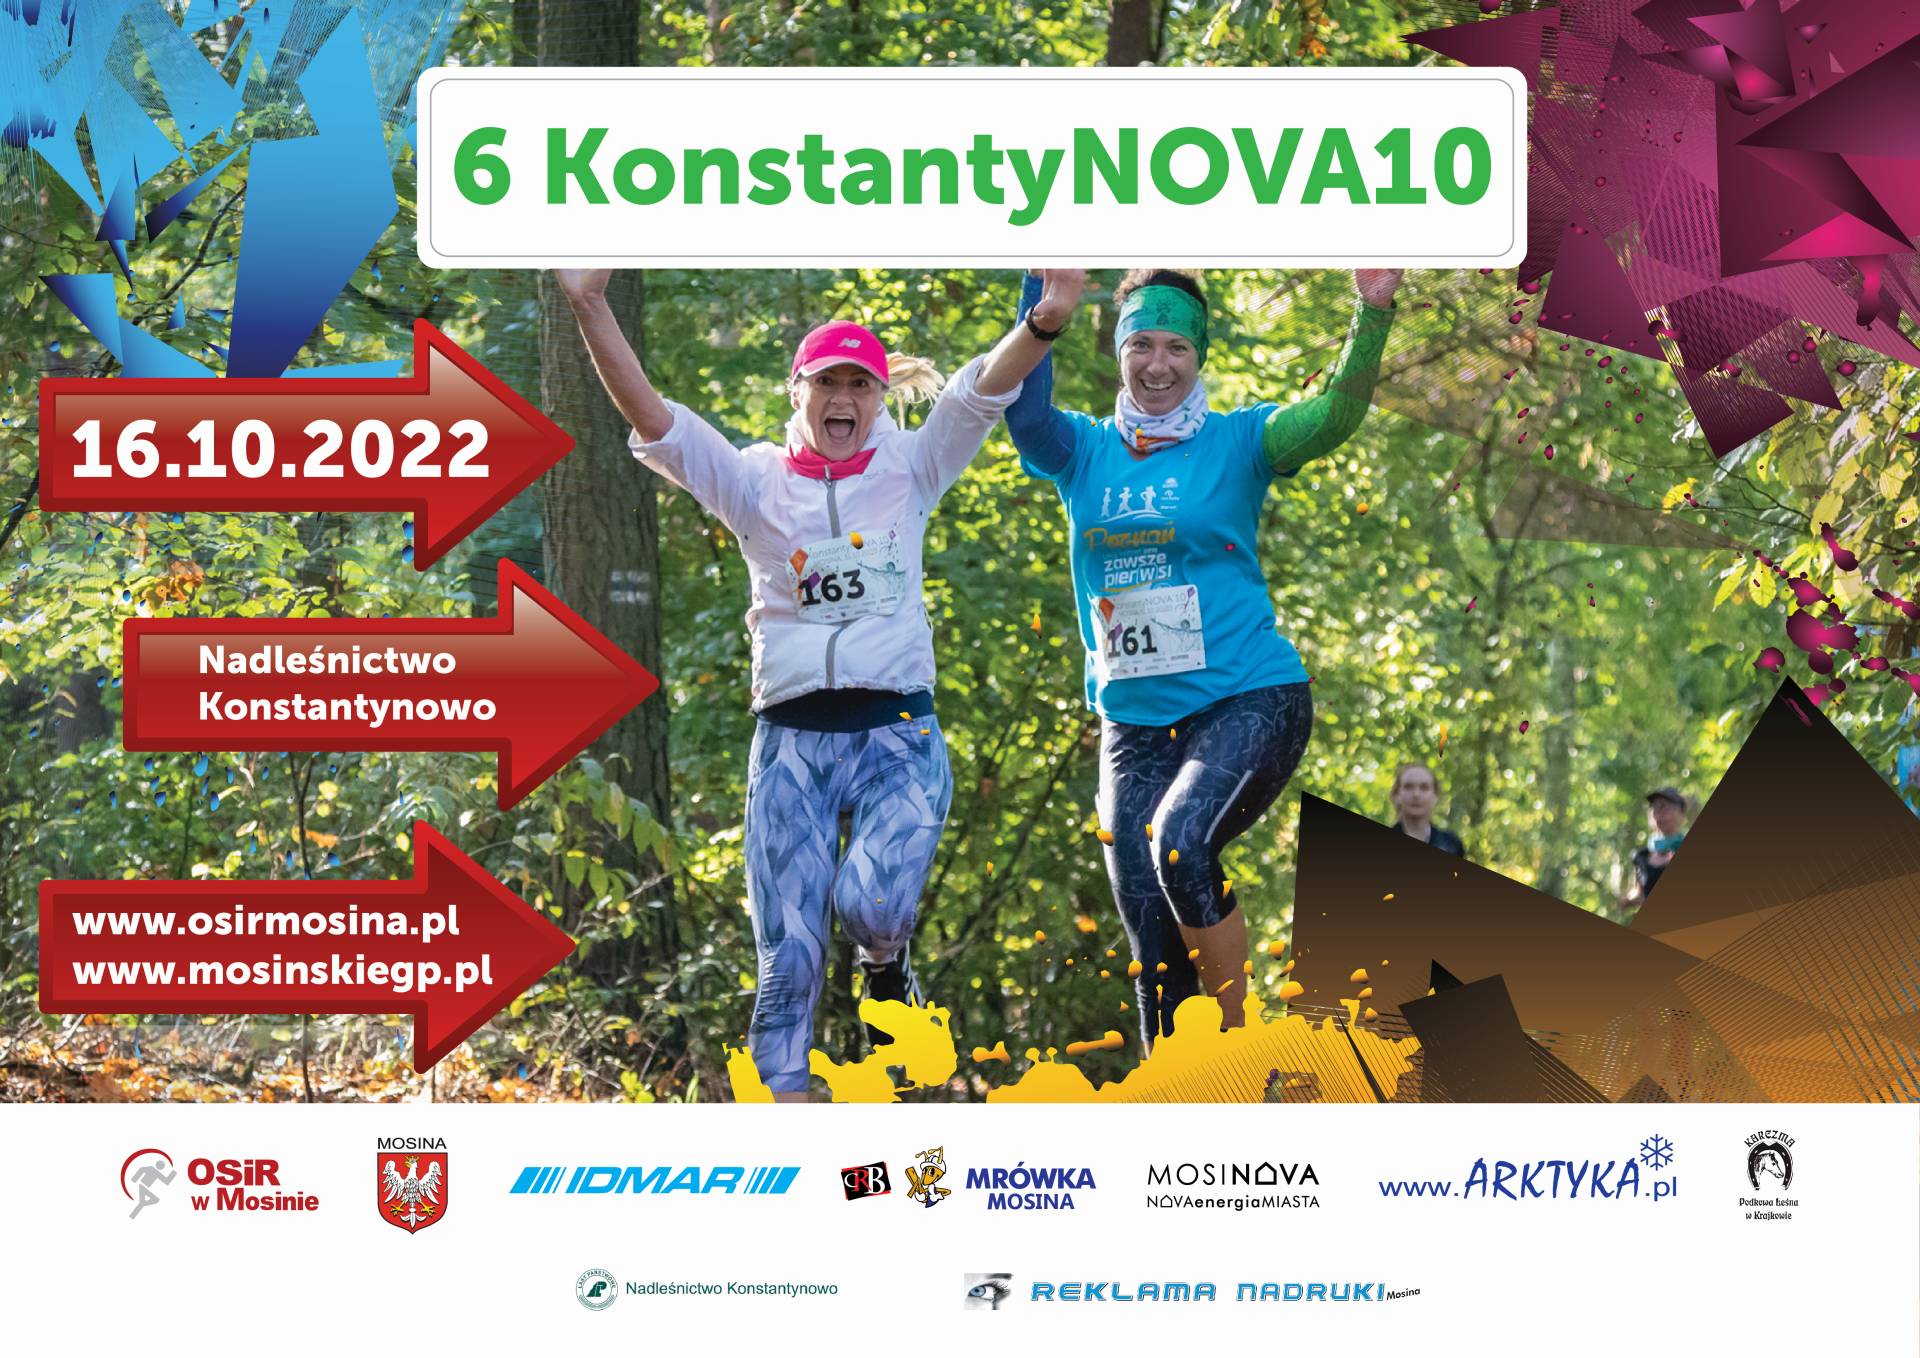 Plakat informacyjny dotyczący 6 Biegu KonstantyNOVA 10 któy odbędzie się 16 października na terenie nadleśnictwa Konstantynowo